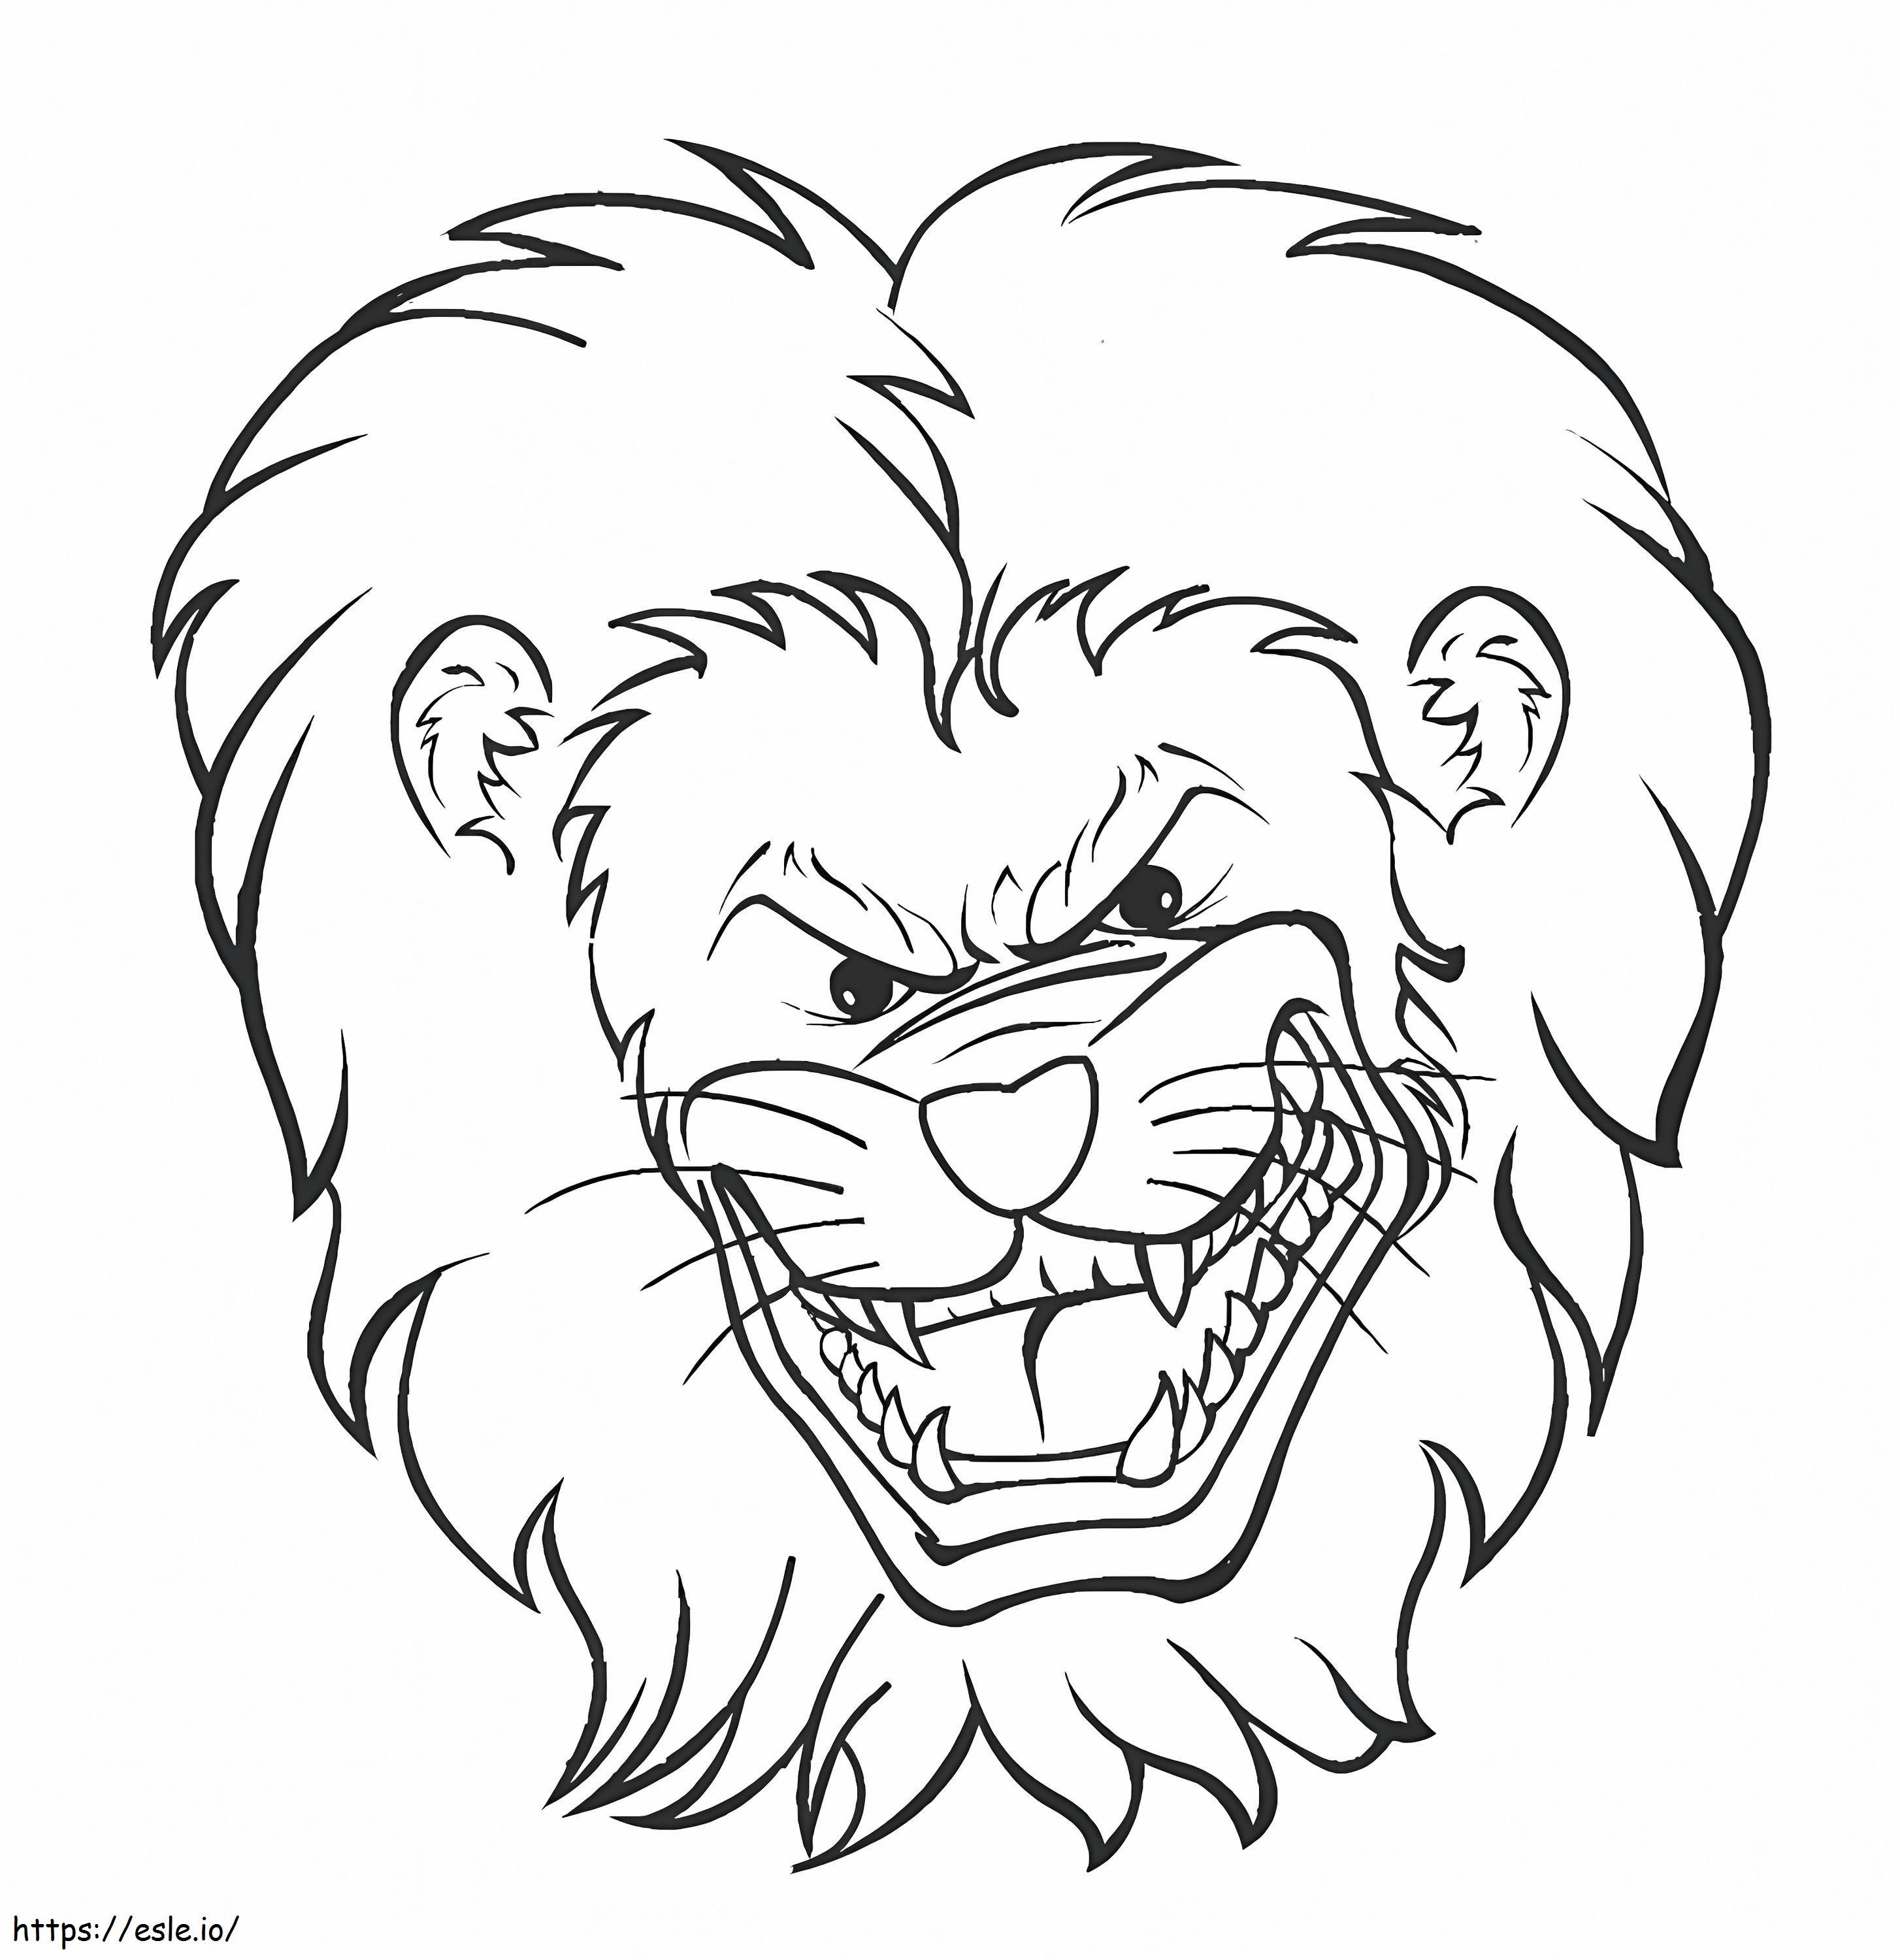 Wütender Löwenkopf ausmalbilder